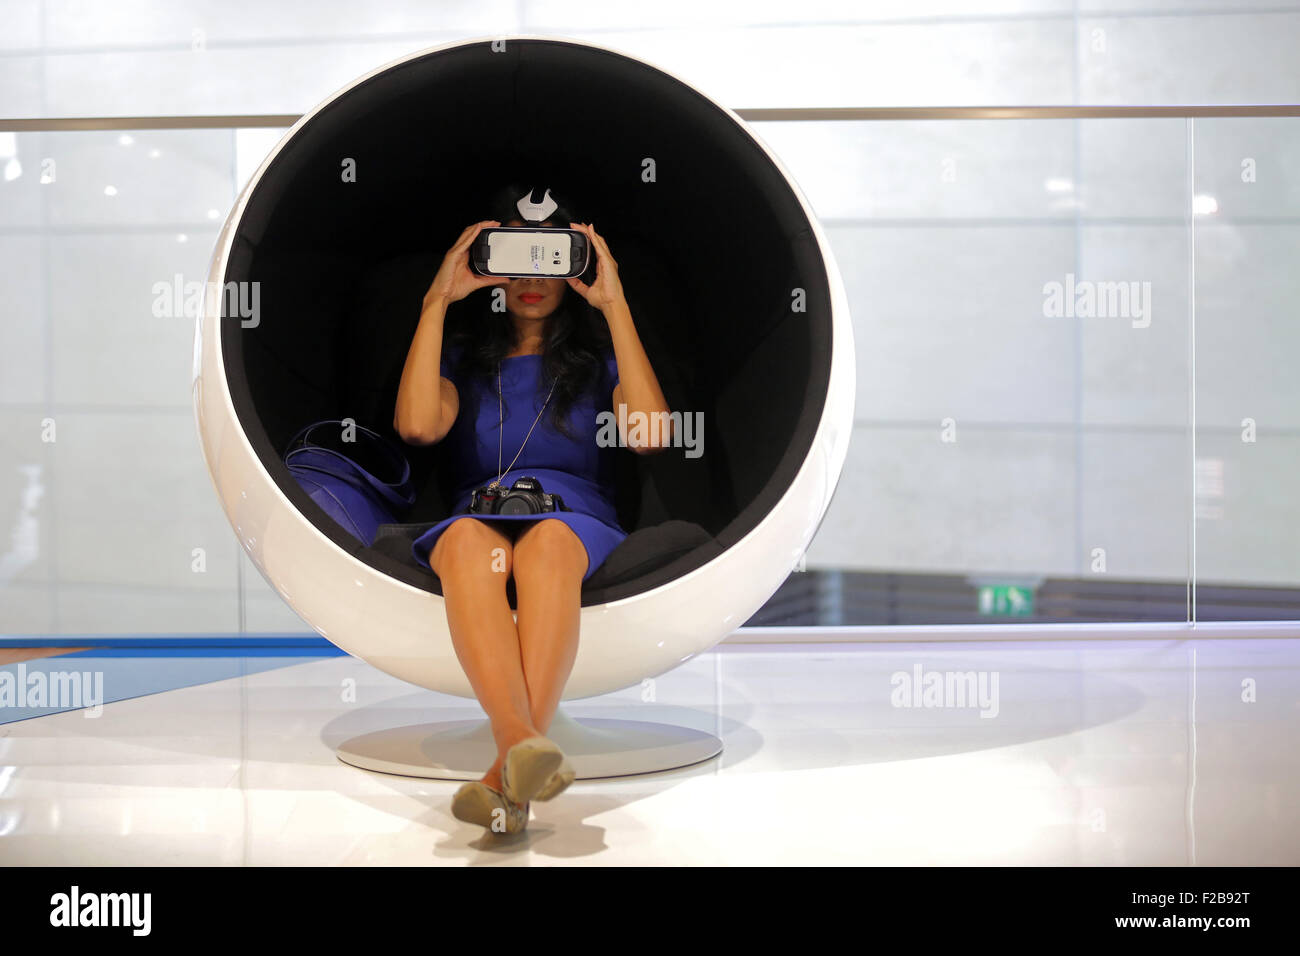 Frankfurt/M, 15.09.2015 - Besucher mit einer virtual-Reality-Maske auf dem BMW-Stand auf der 66. internationalen Motor Show IAA 2015 (Internationale Automobil Ausstellung, IAA) in Frankfurt/Main, Deutschland Stockfoto